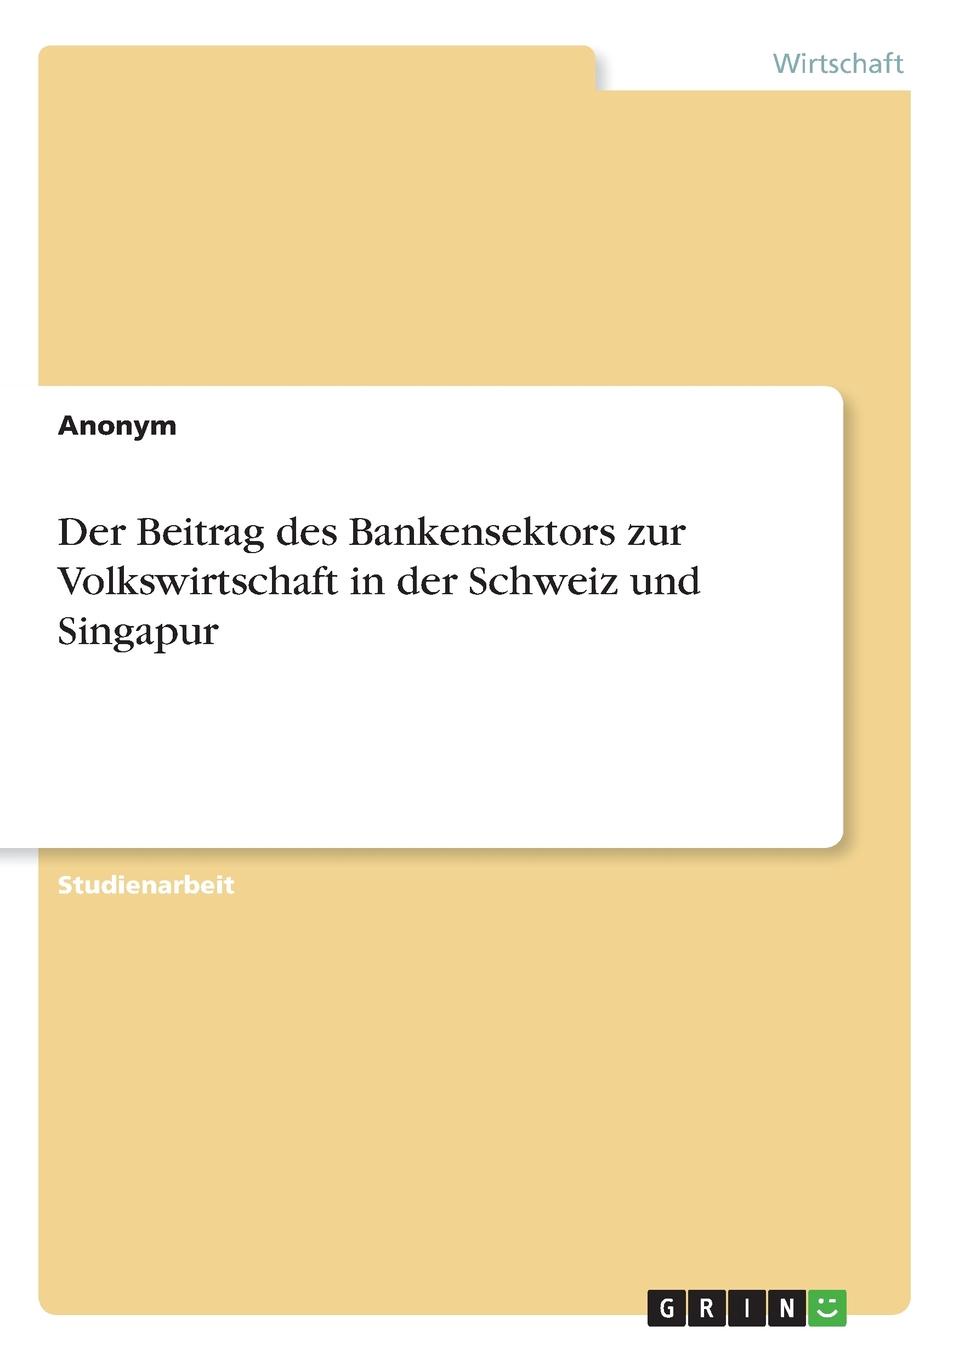 фото Der Beitrag des Bankensektors zur Volkswirtschaft in der Schweiz und Singapur